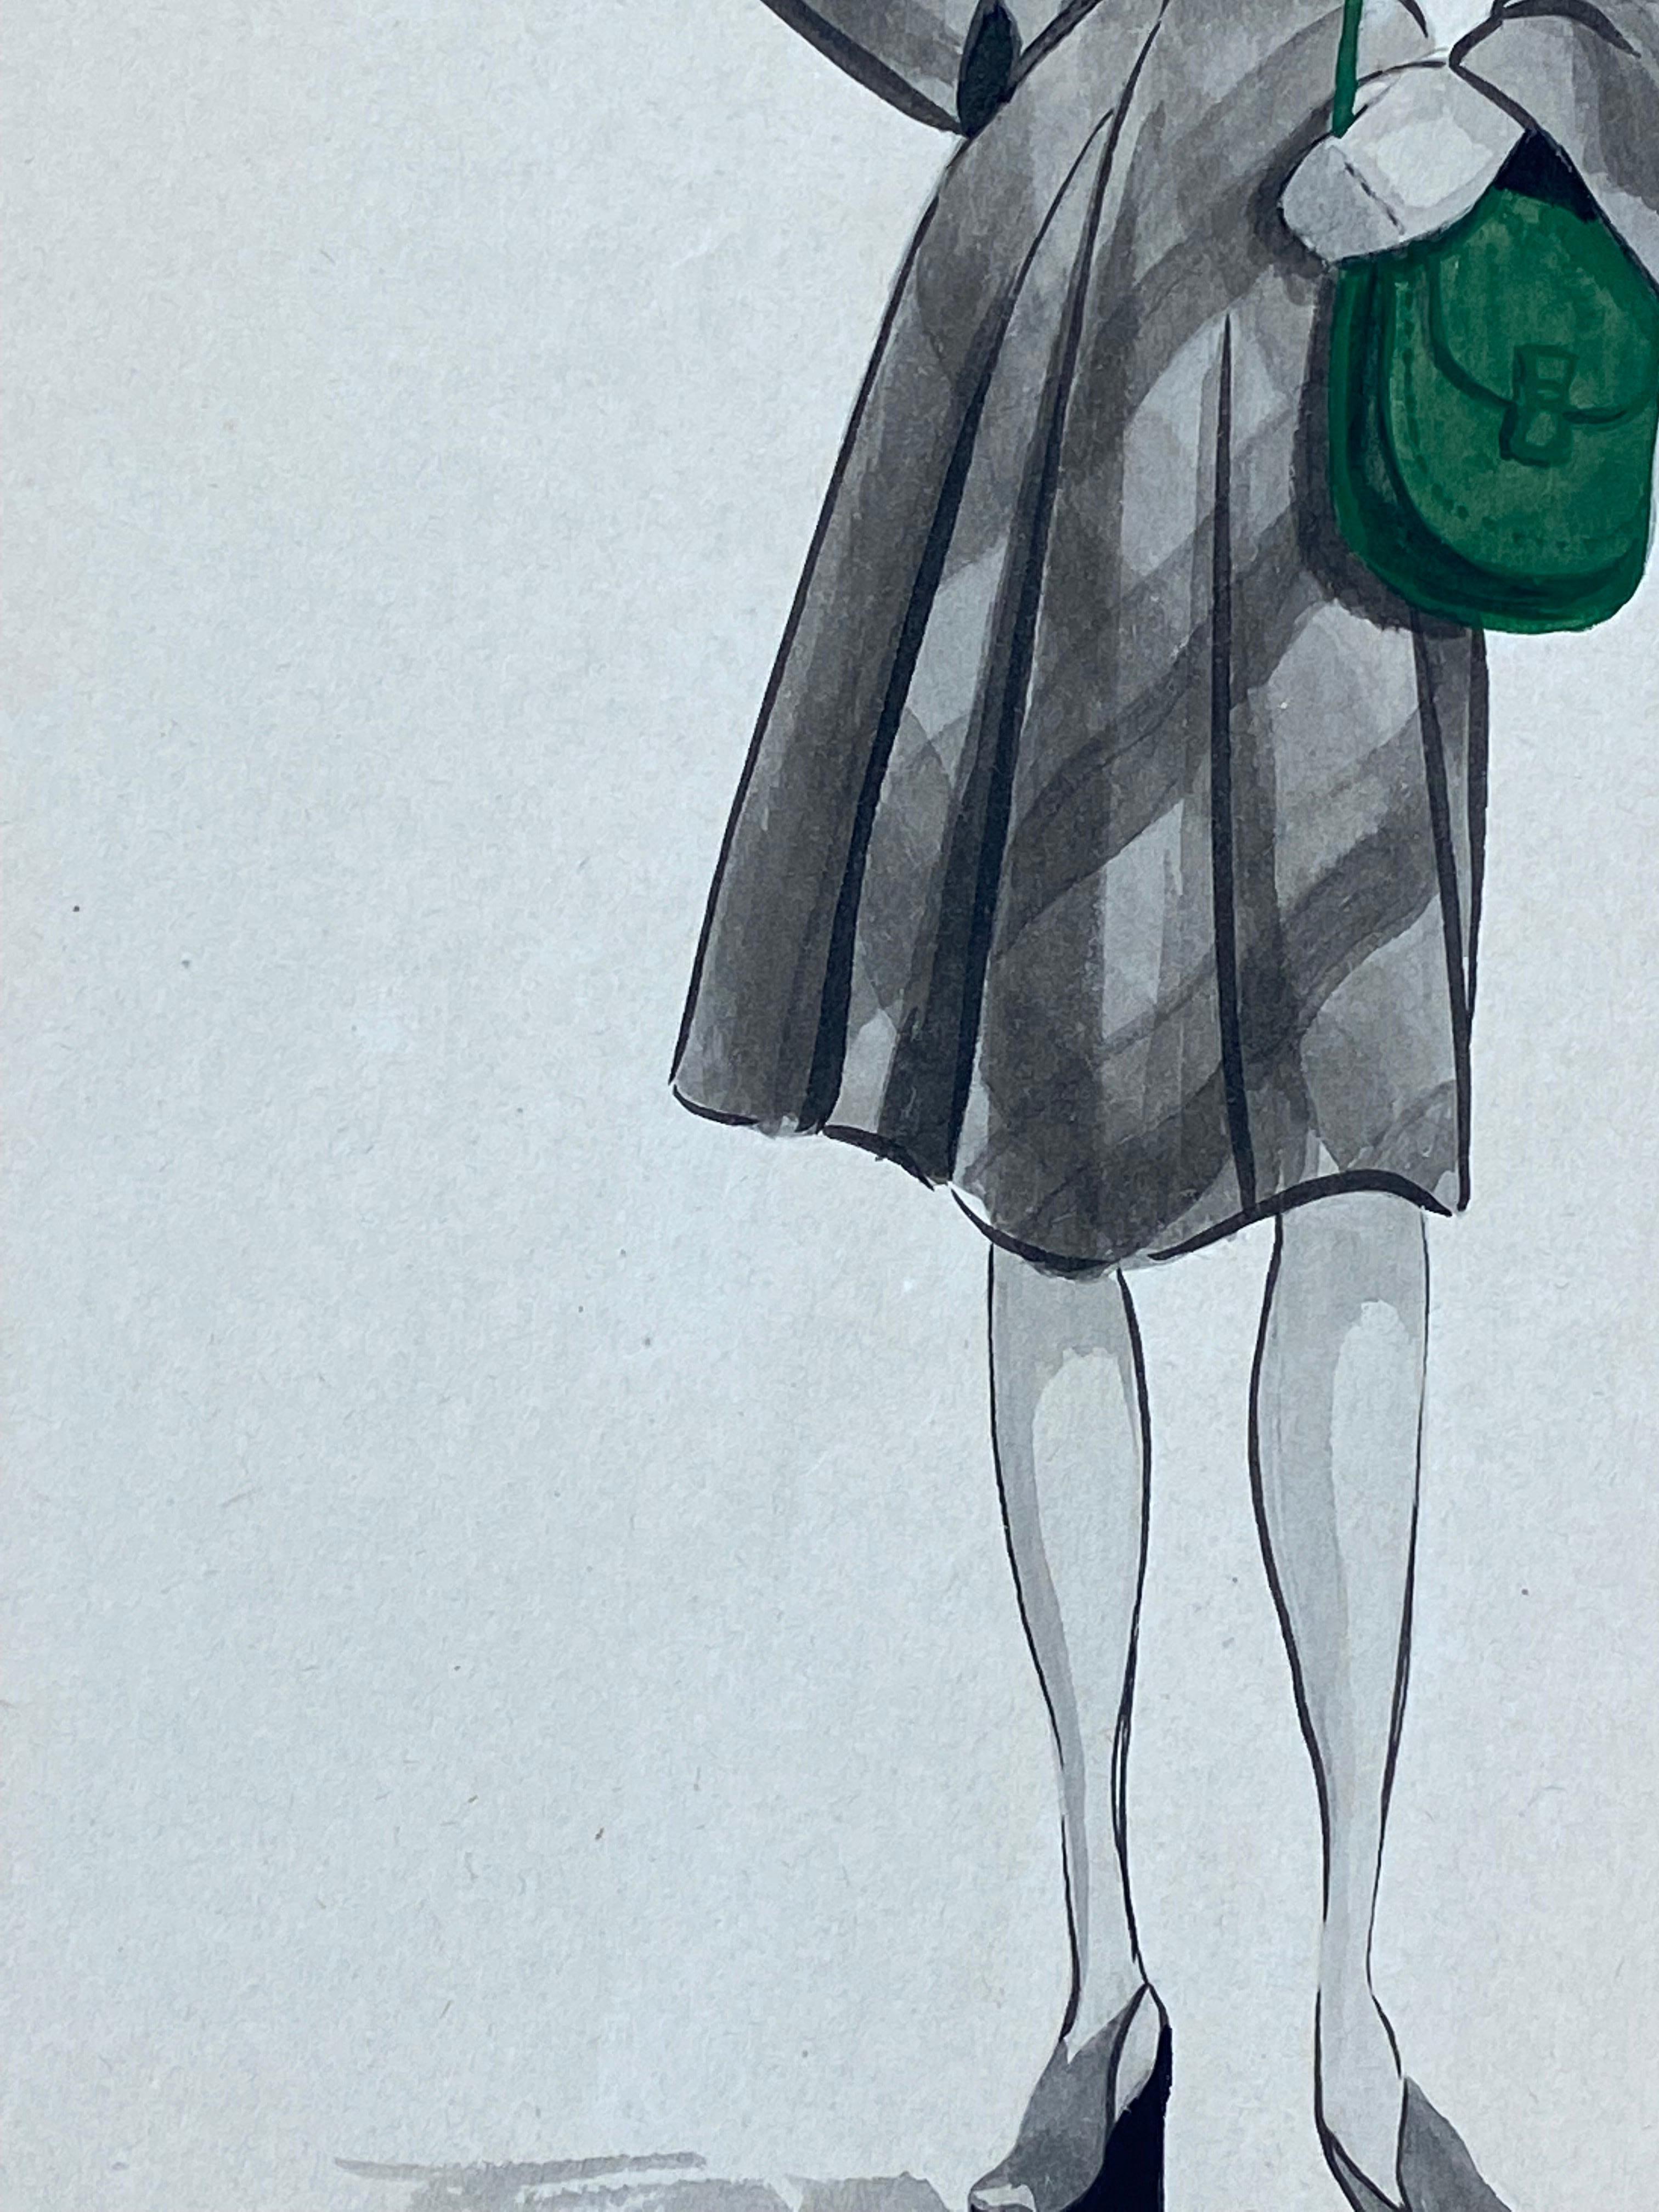 Sehr stilvolles, einzigartiges und originelles Modedesign aus den 1940er Jahren von der französischen Illustratorin Geneviève Thomas.

Das Gemälde, ausgeführt in Gouache und Bleistift.

Die Skizze ist original, Vintage und misst ungerahmt 12 x 7,5